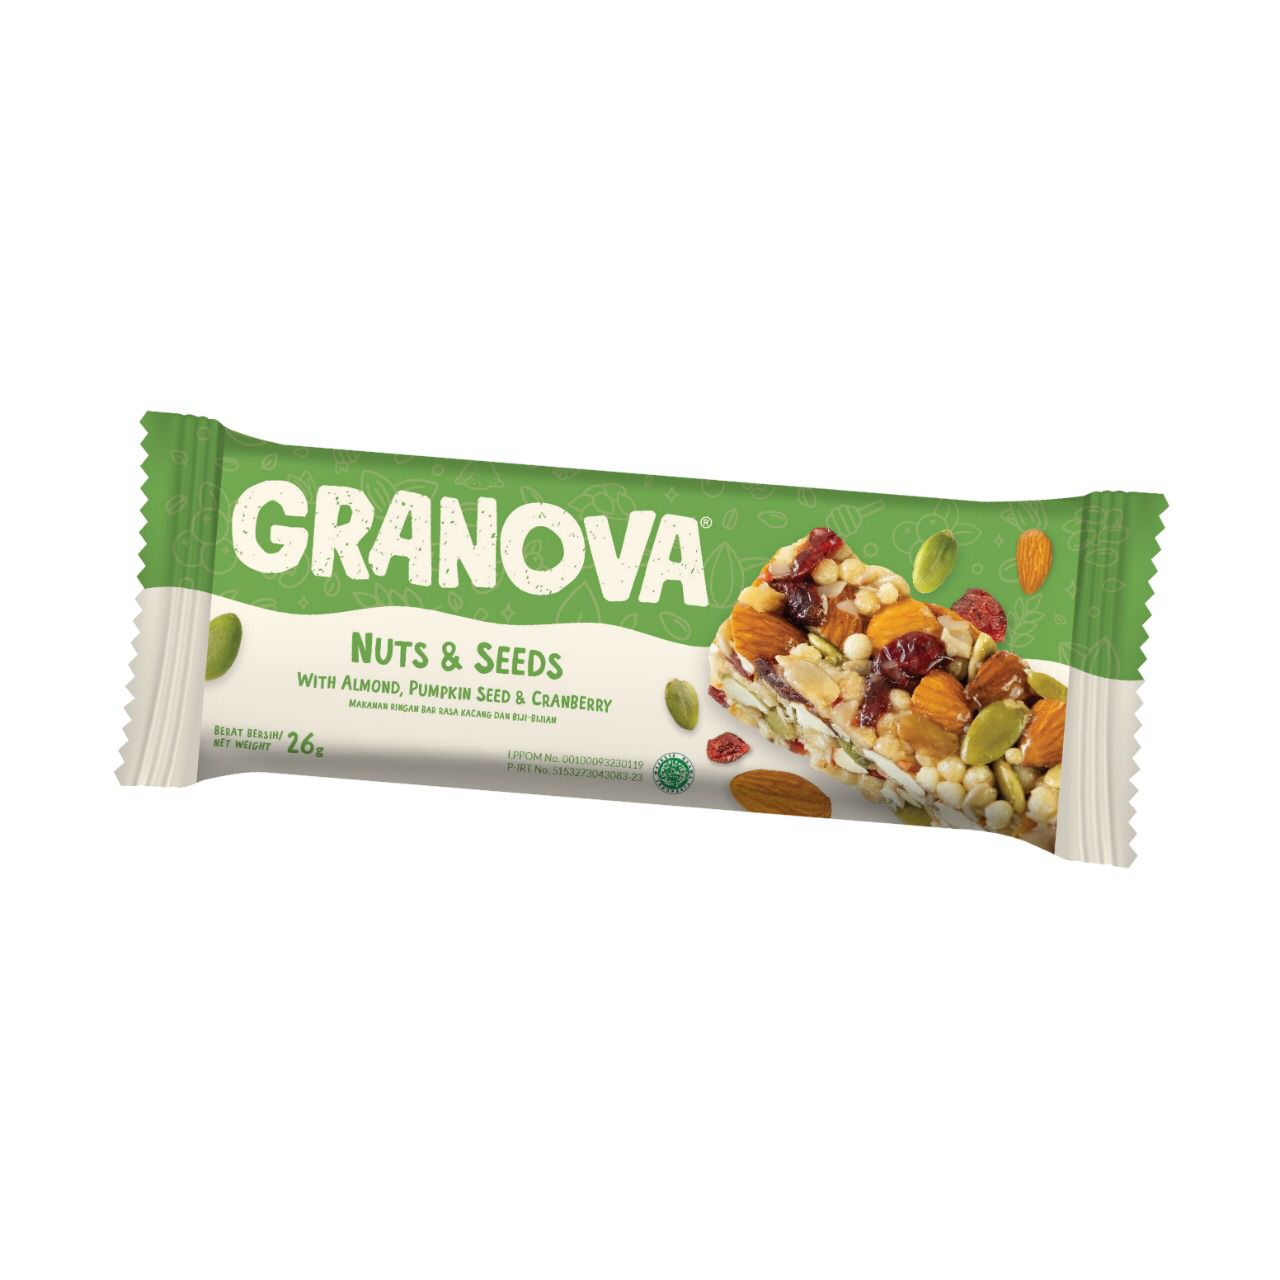 Granova Granola Nuts & Seeds Bar 26 gr